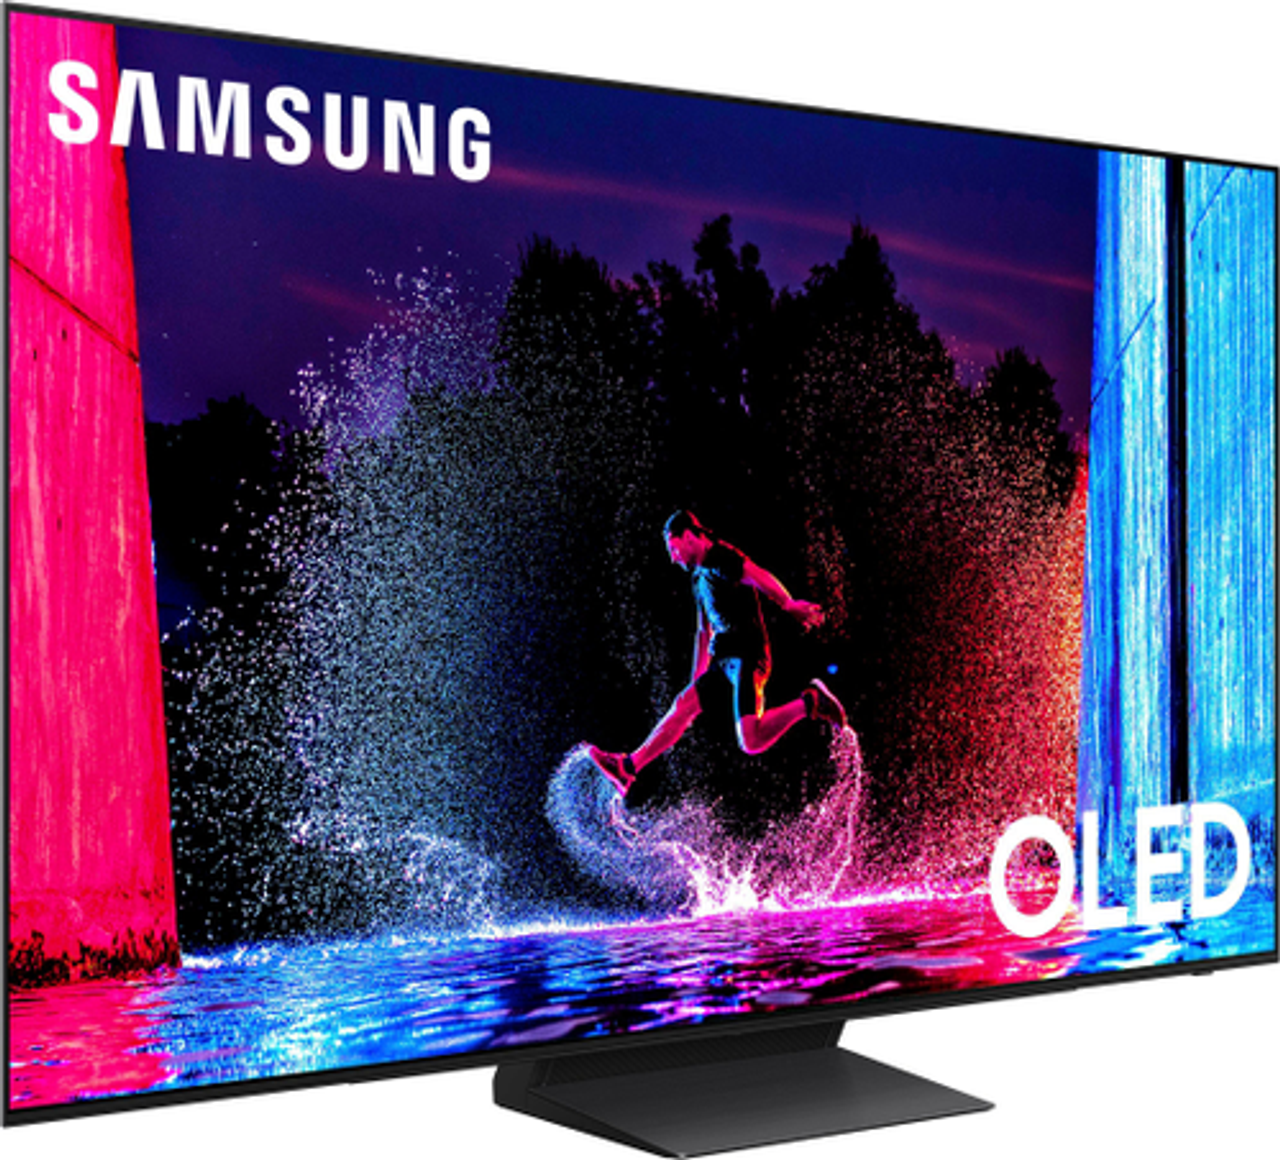 Samsung - 55" Class S90D Series OLED 4K Smart Tizen TV